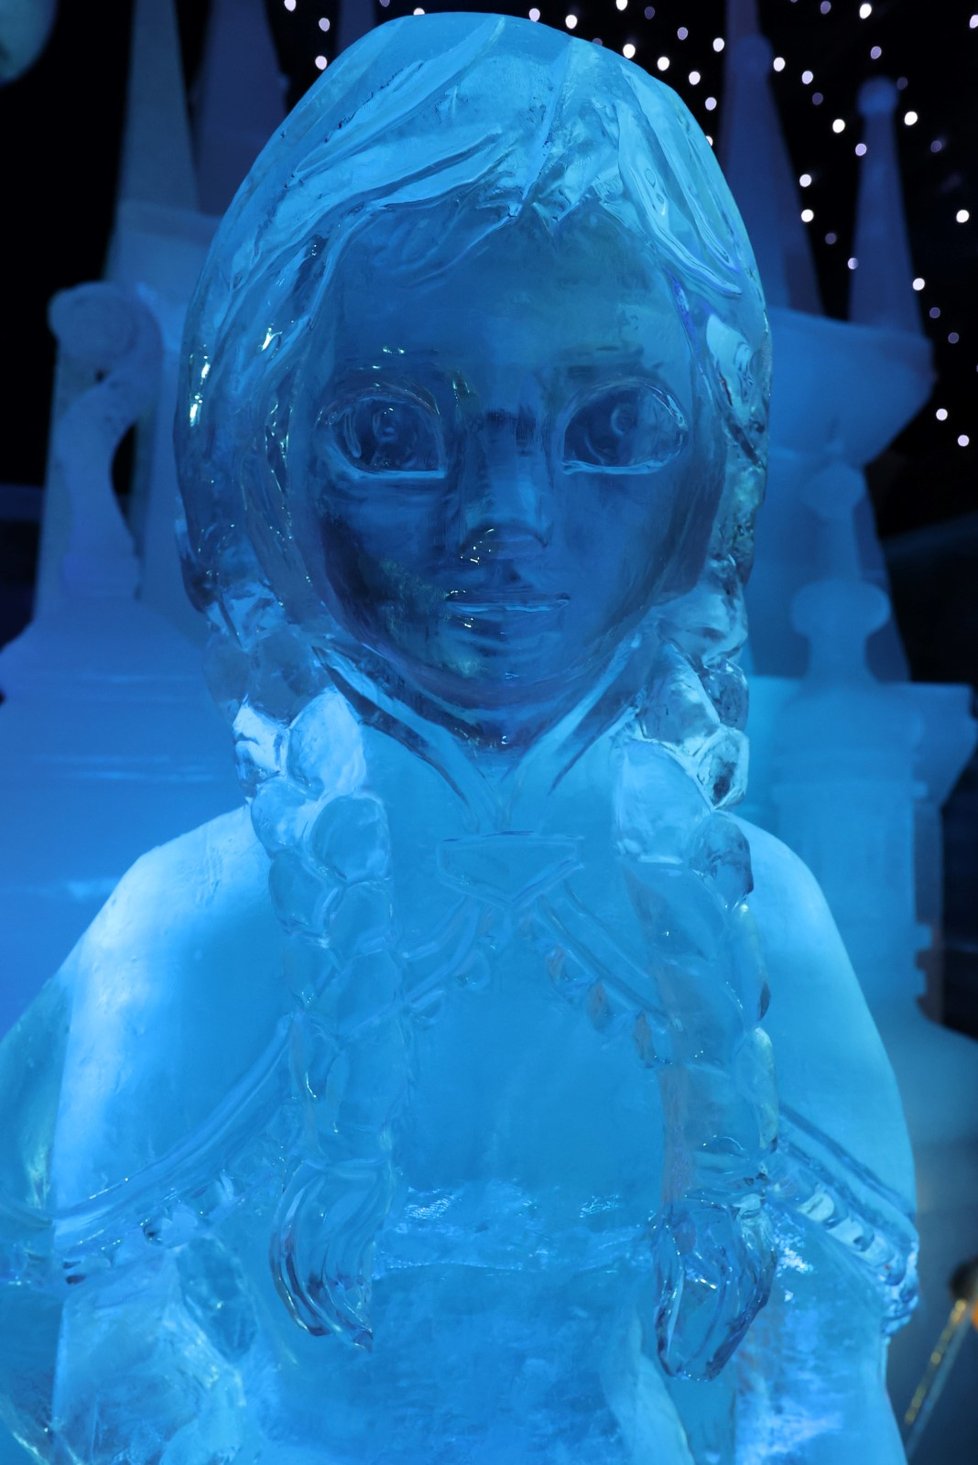 V Riegrových sadech je k vidění výstava ledových soch na motivy oblíbených animovaných pohádek